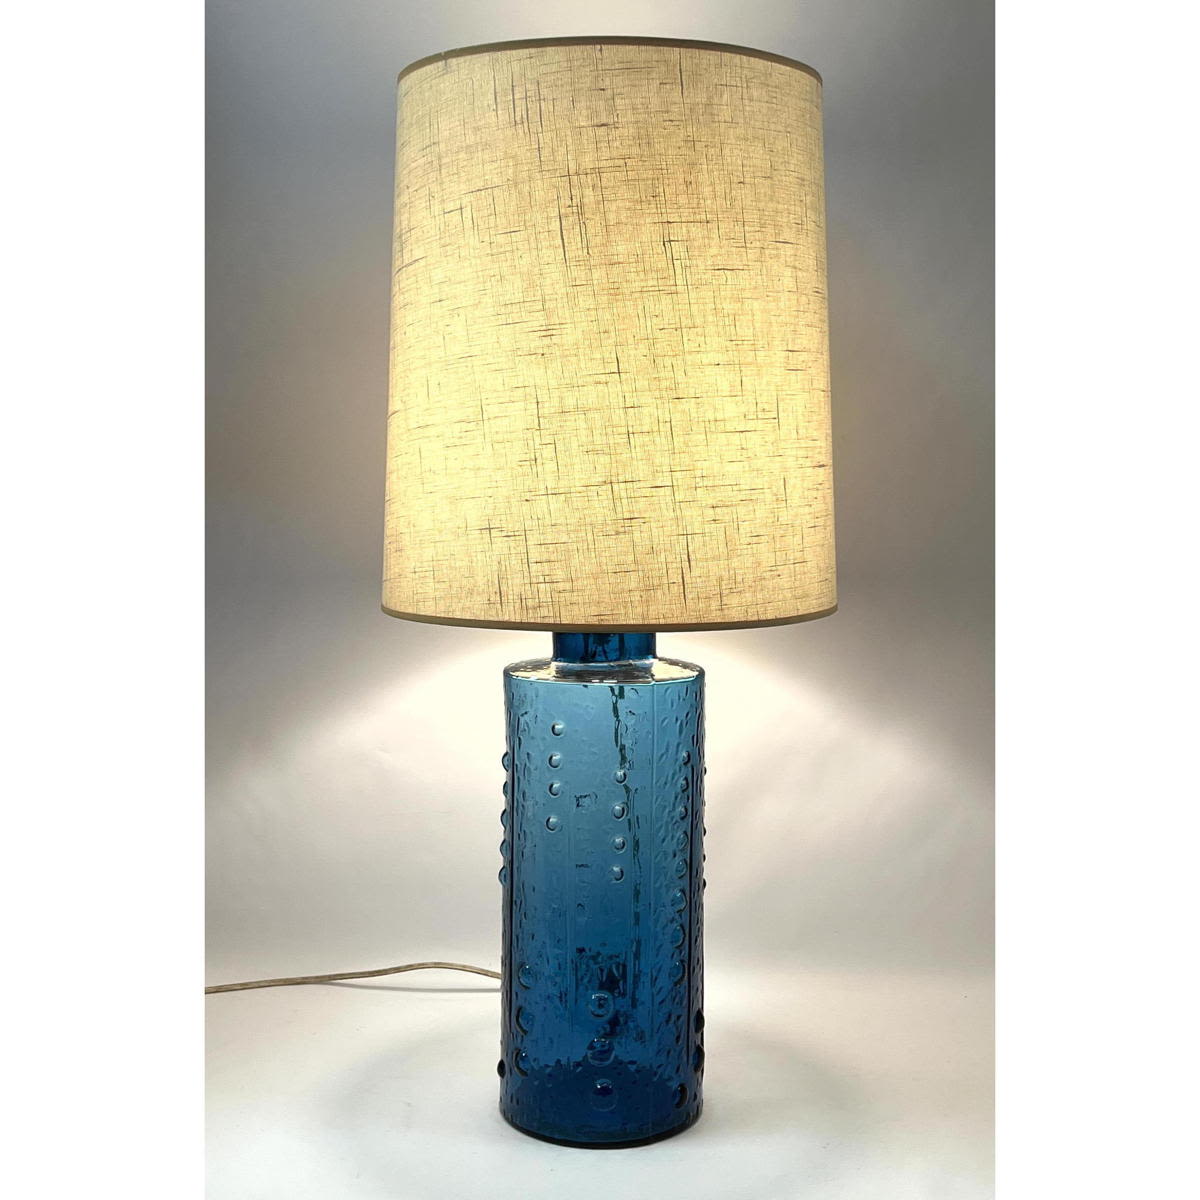 Large Blue Glass Lamp by Pukeberg 3acb87